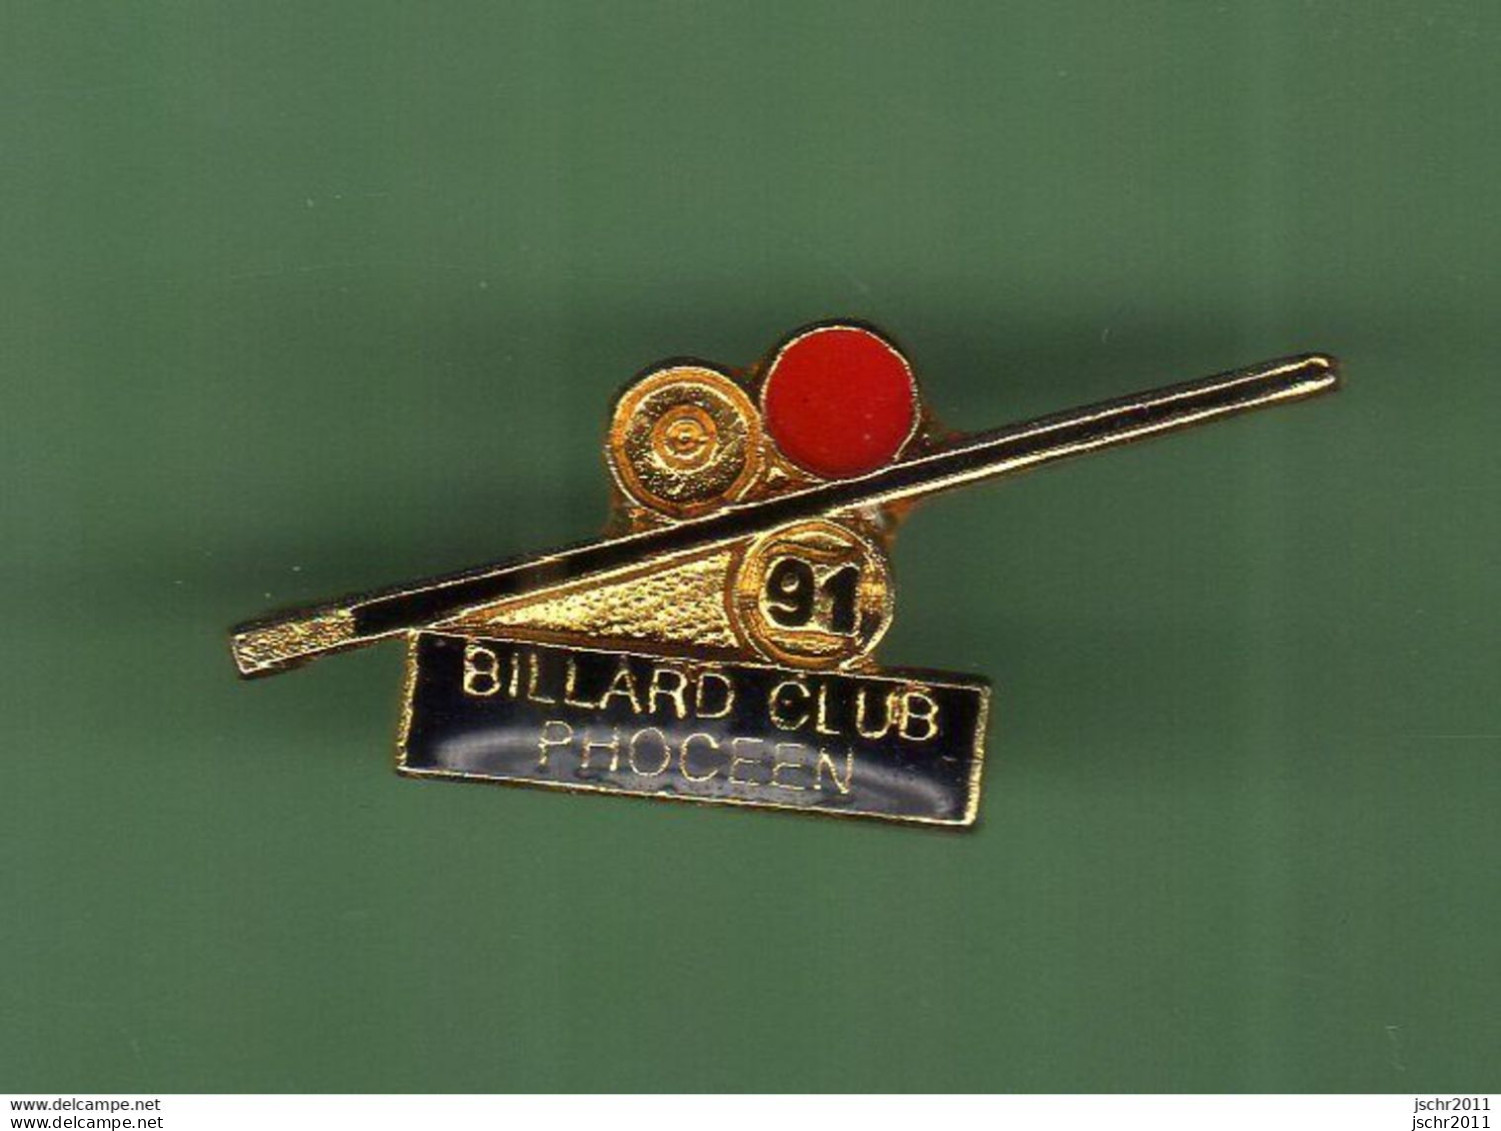 BILLARD *** CLUB PHOCEEN *** WW 5056 - Billard